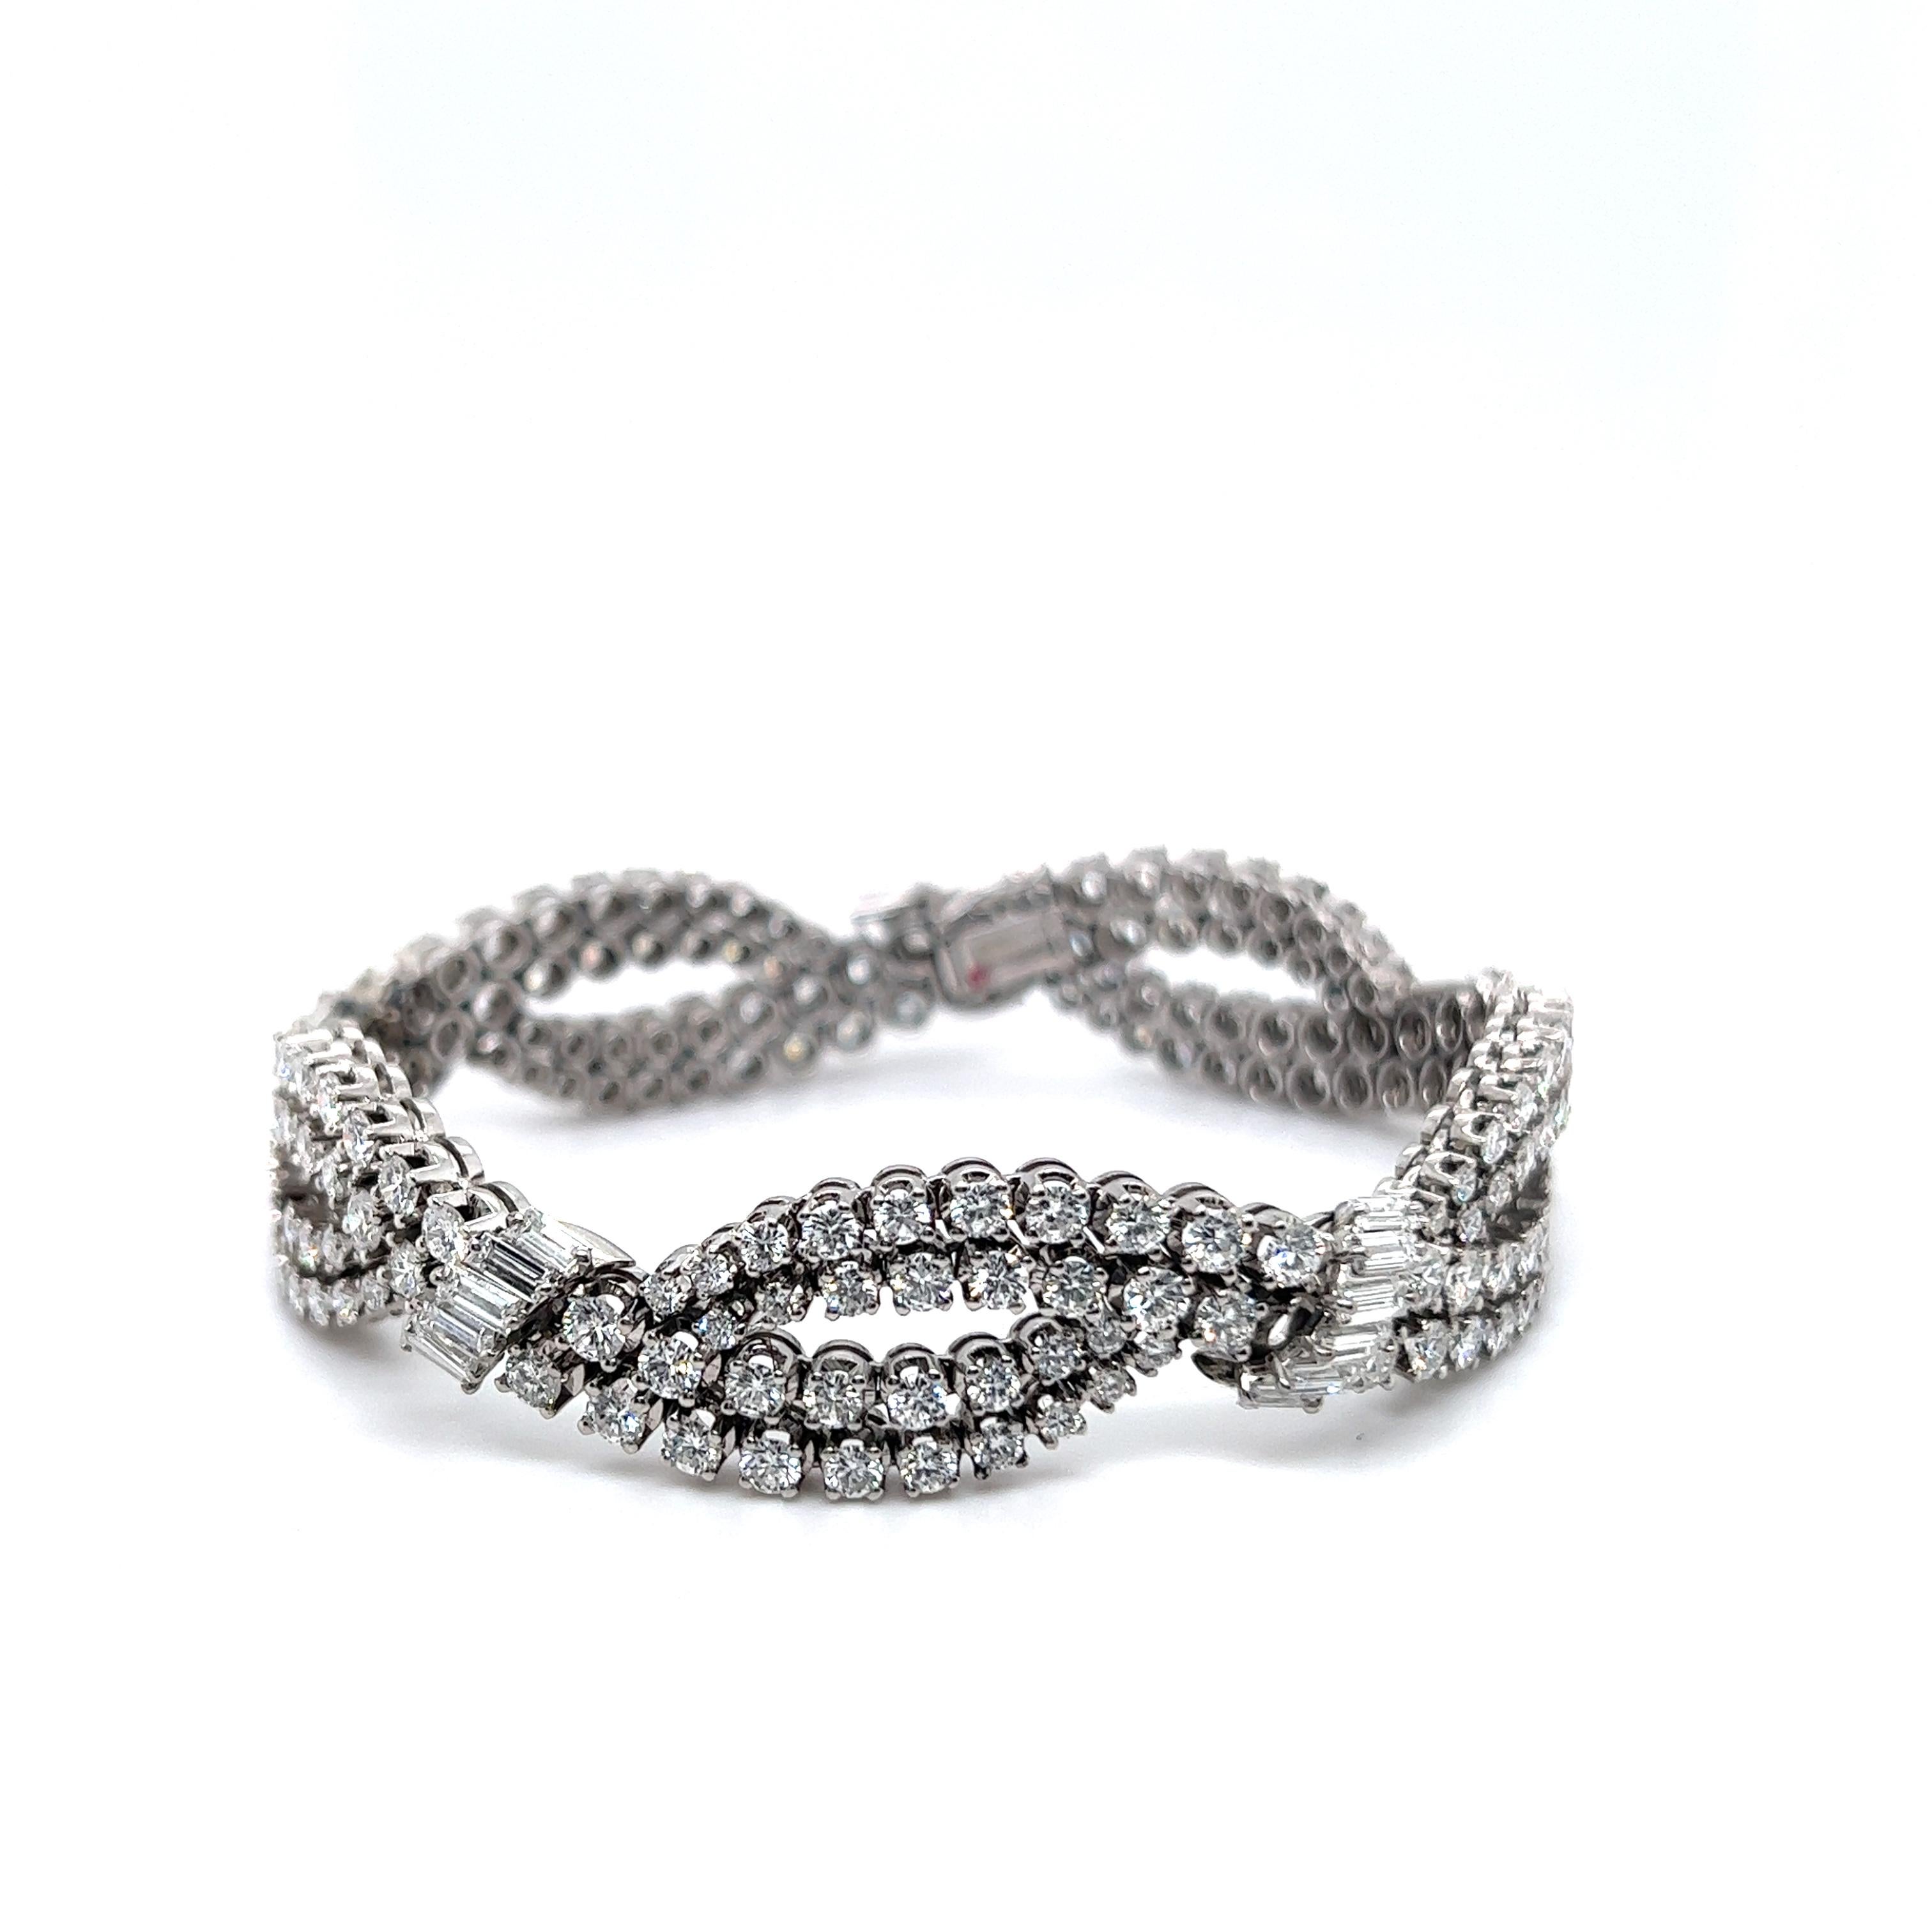 Un bracelet esthétique tissé de diamants en or blanc 18 carats. Le charme des classiques, incarné par un design élégant et une qualité exceptionnelle. 

180 diamants taille brillant de tot. 9,40 carats créent quatre rangs entrelacés les uns aux